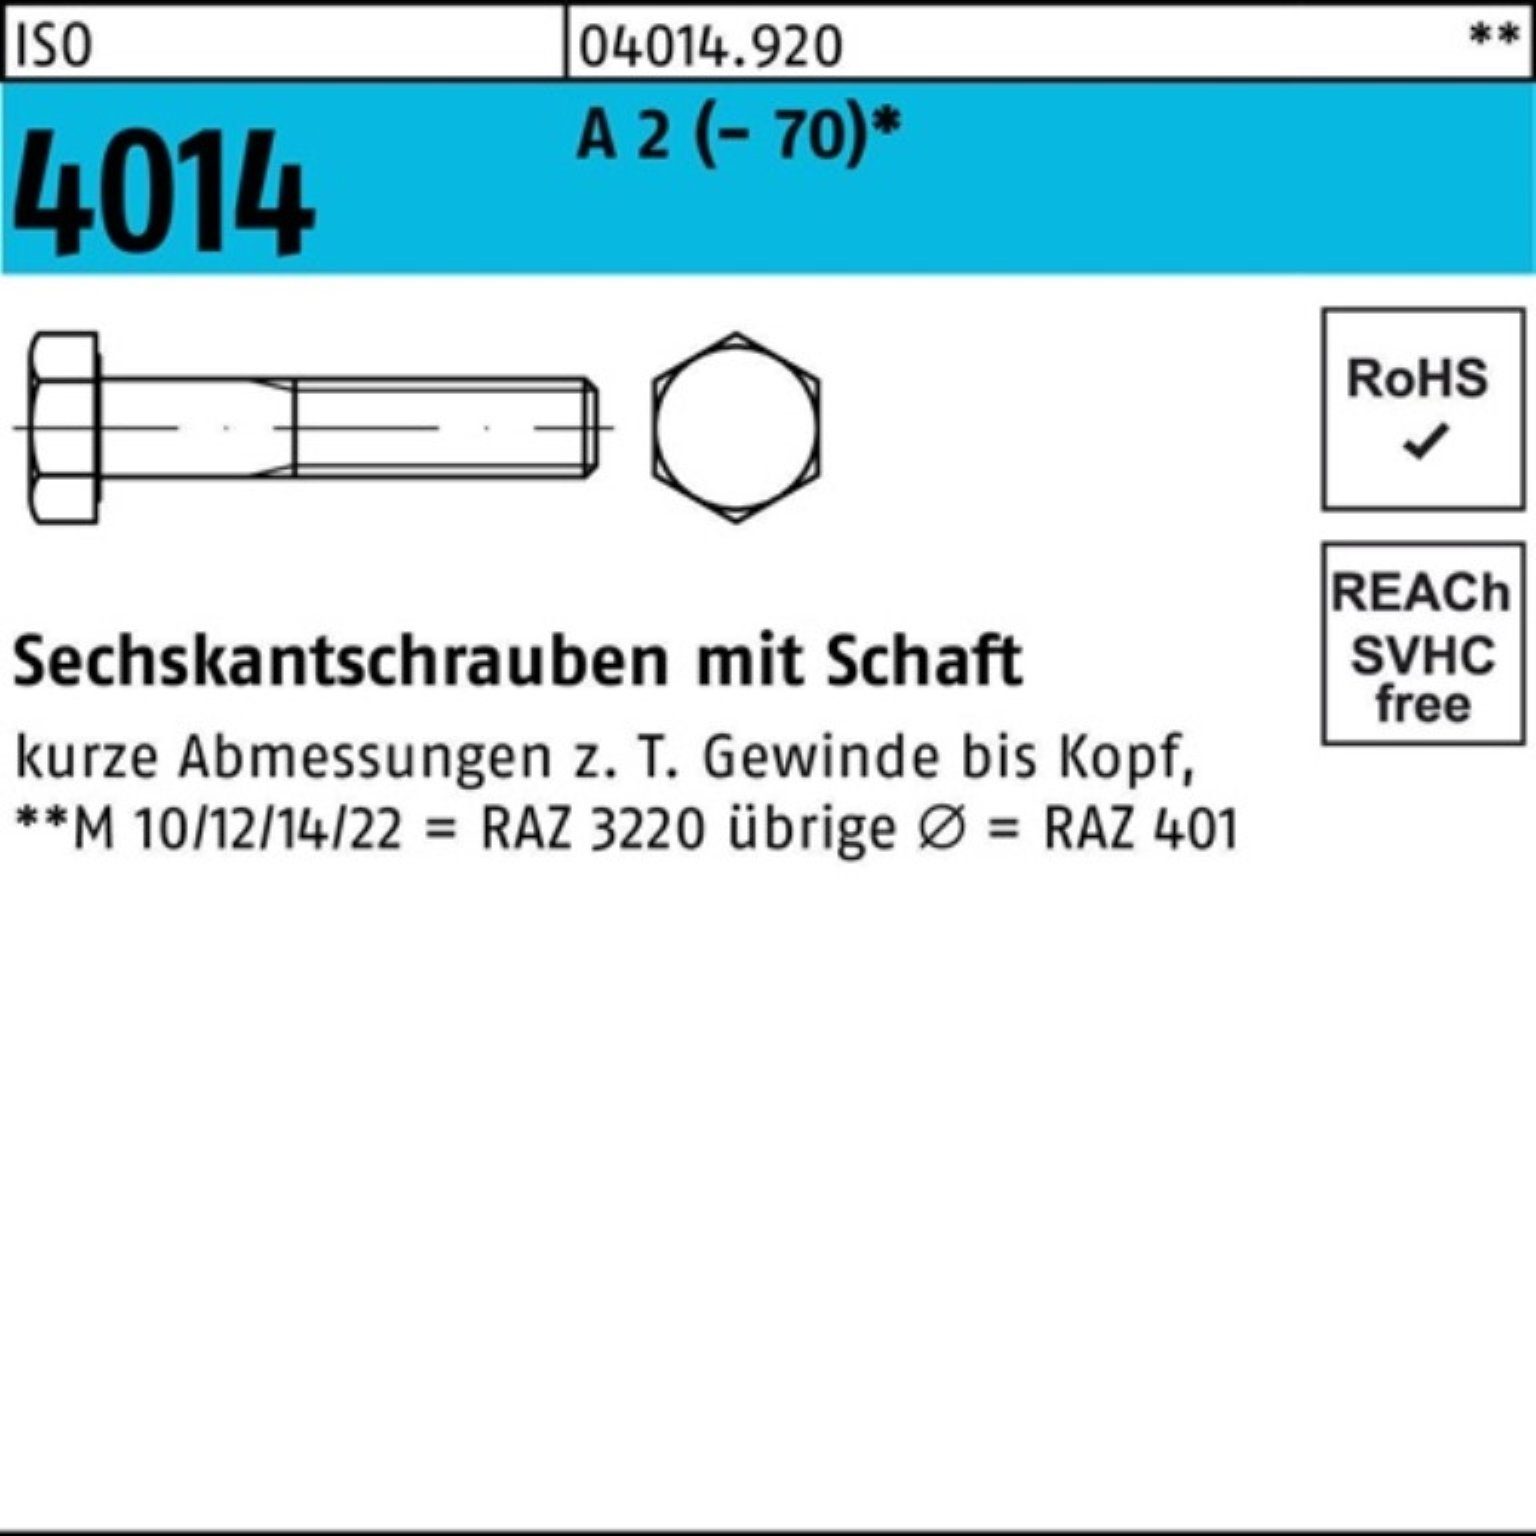 Bufab Sechskantschraube 100er Pack Sechskantschraube ISO 4014 Schaft M6x 65 A 2 (70) 100 St